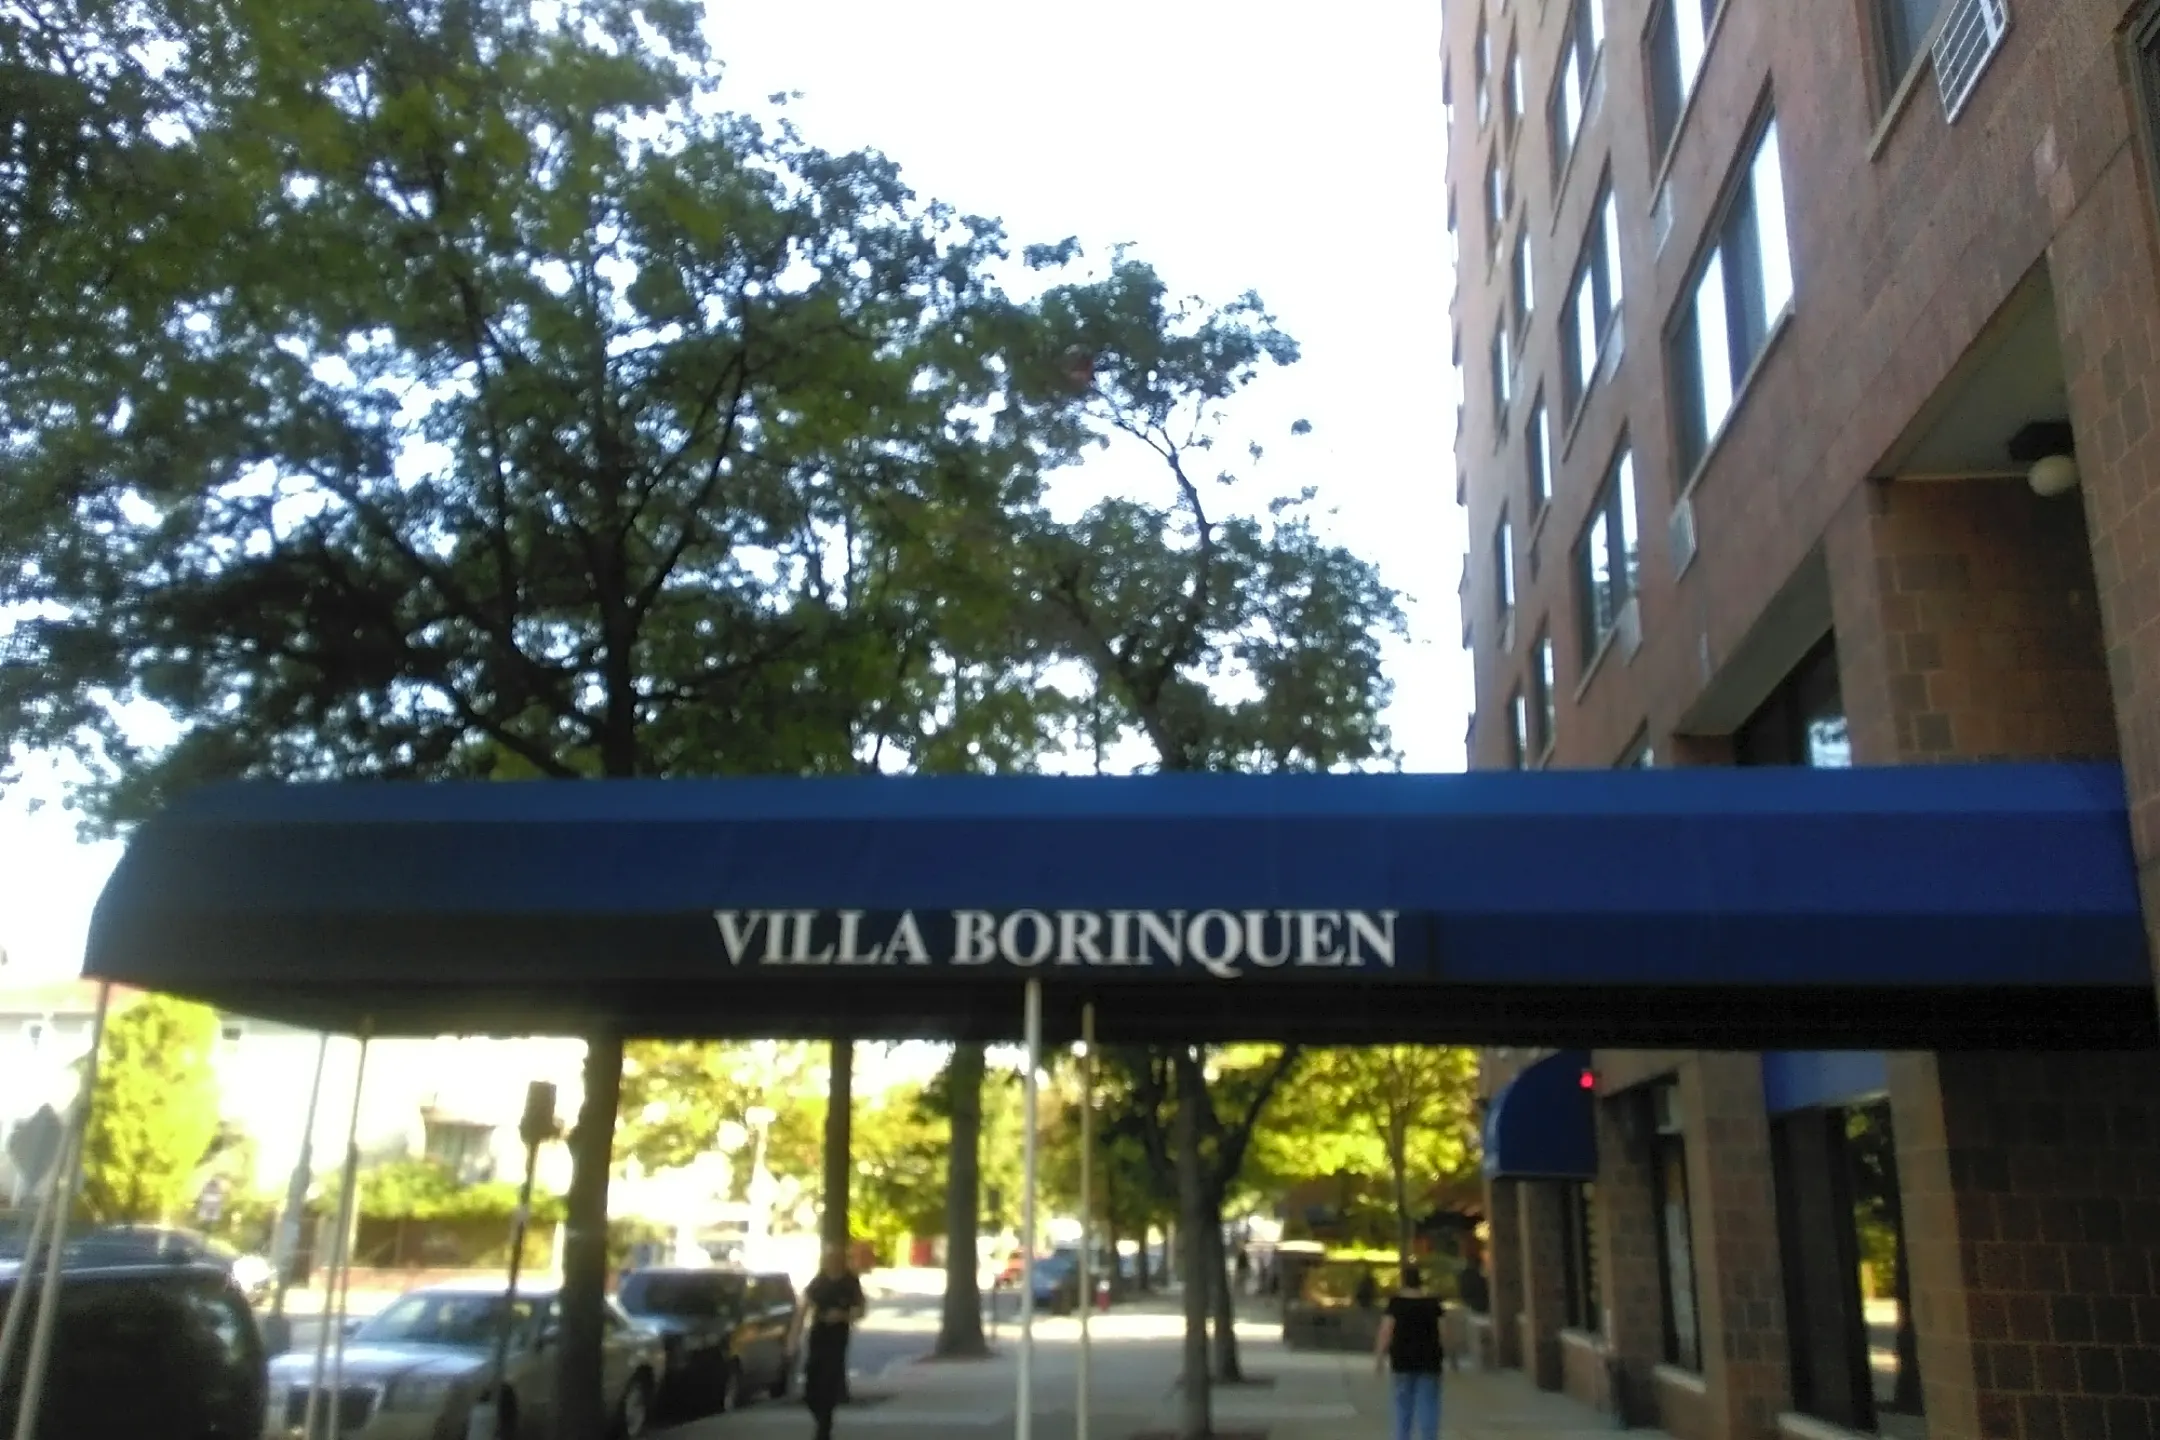 Pool - Villa Borinquen - Jersey City, NJ